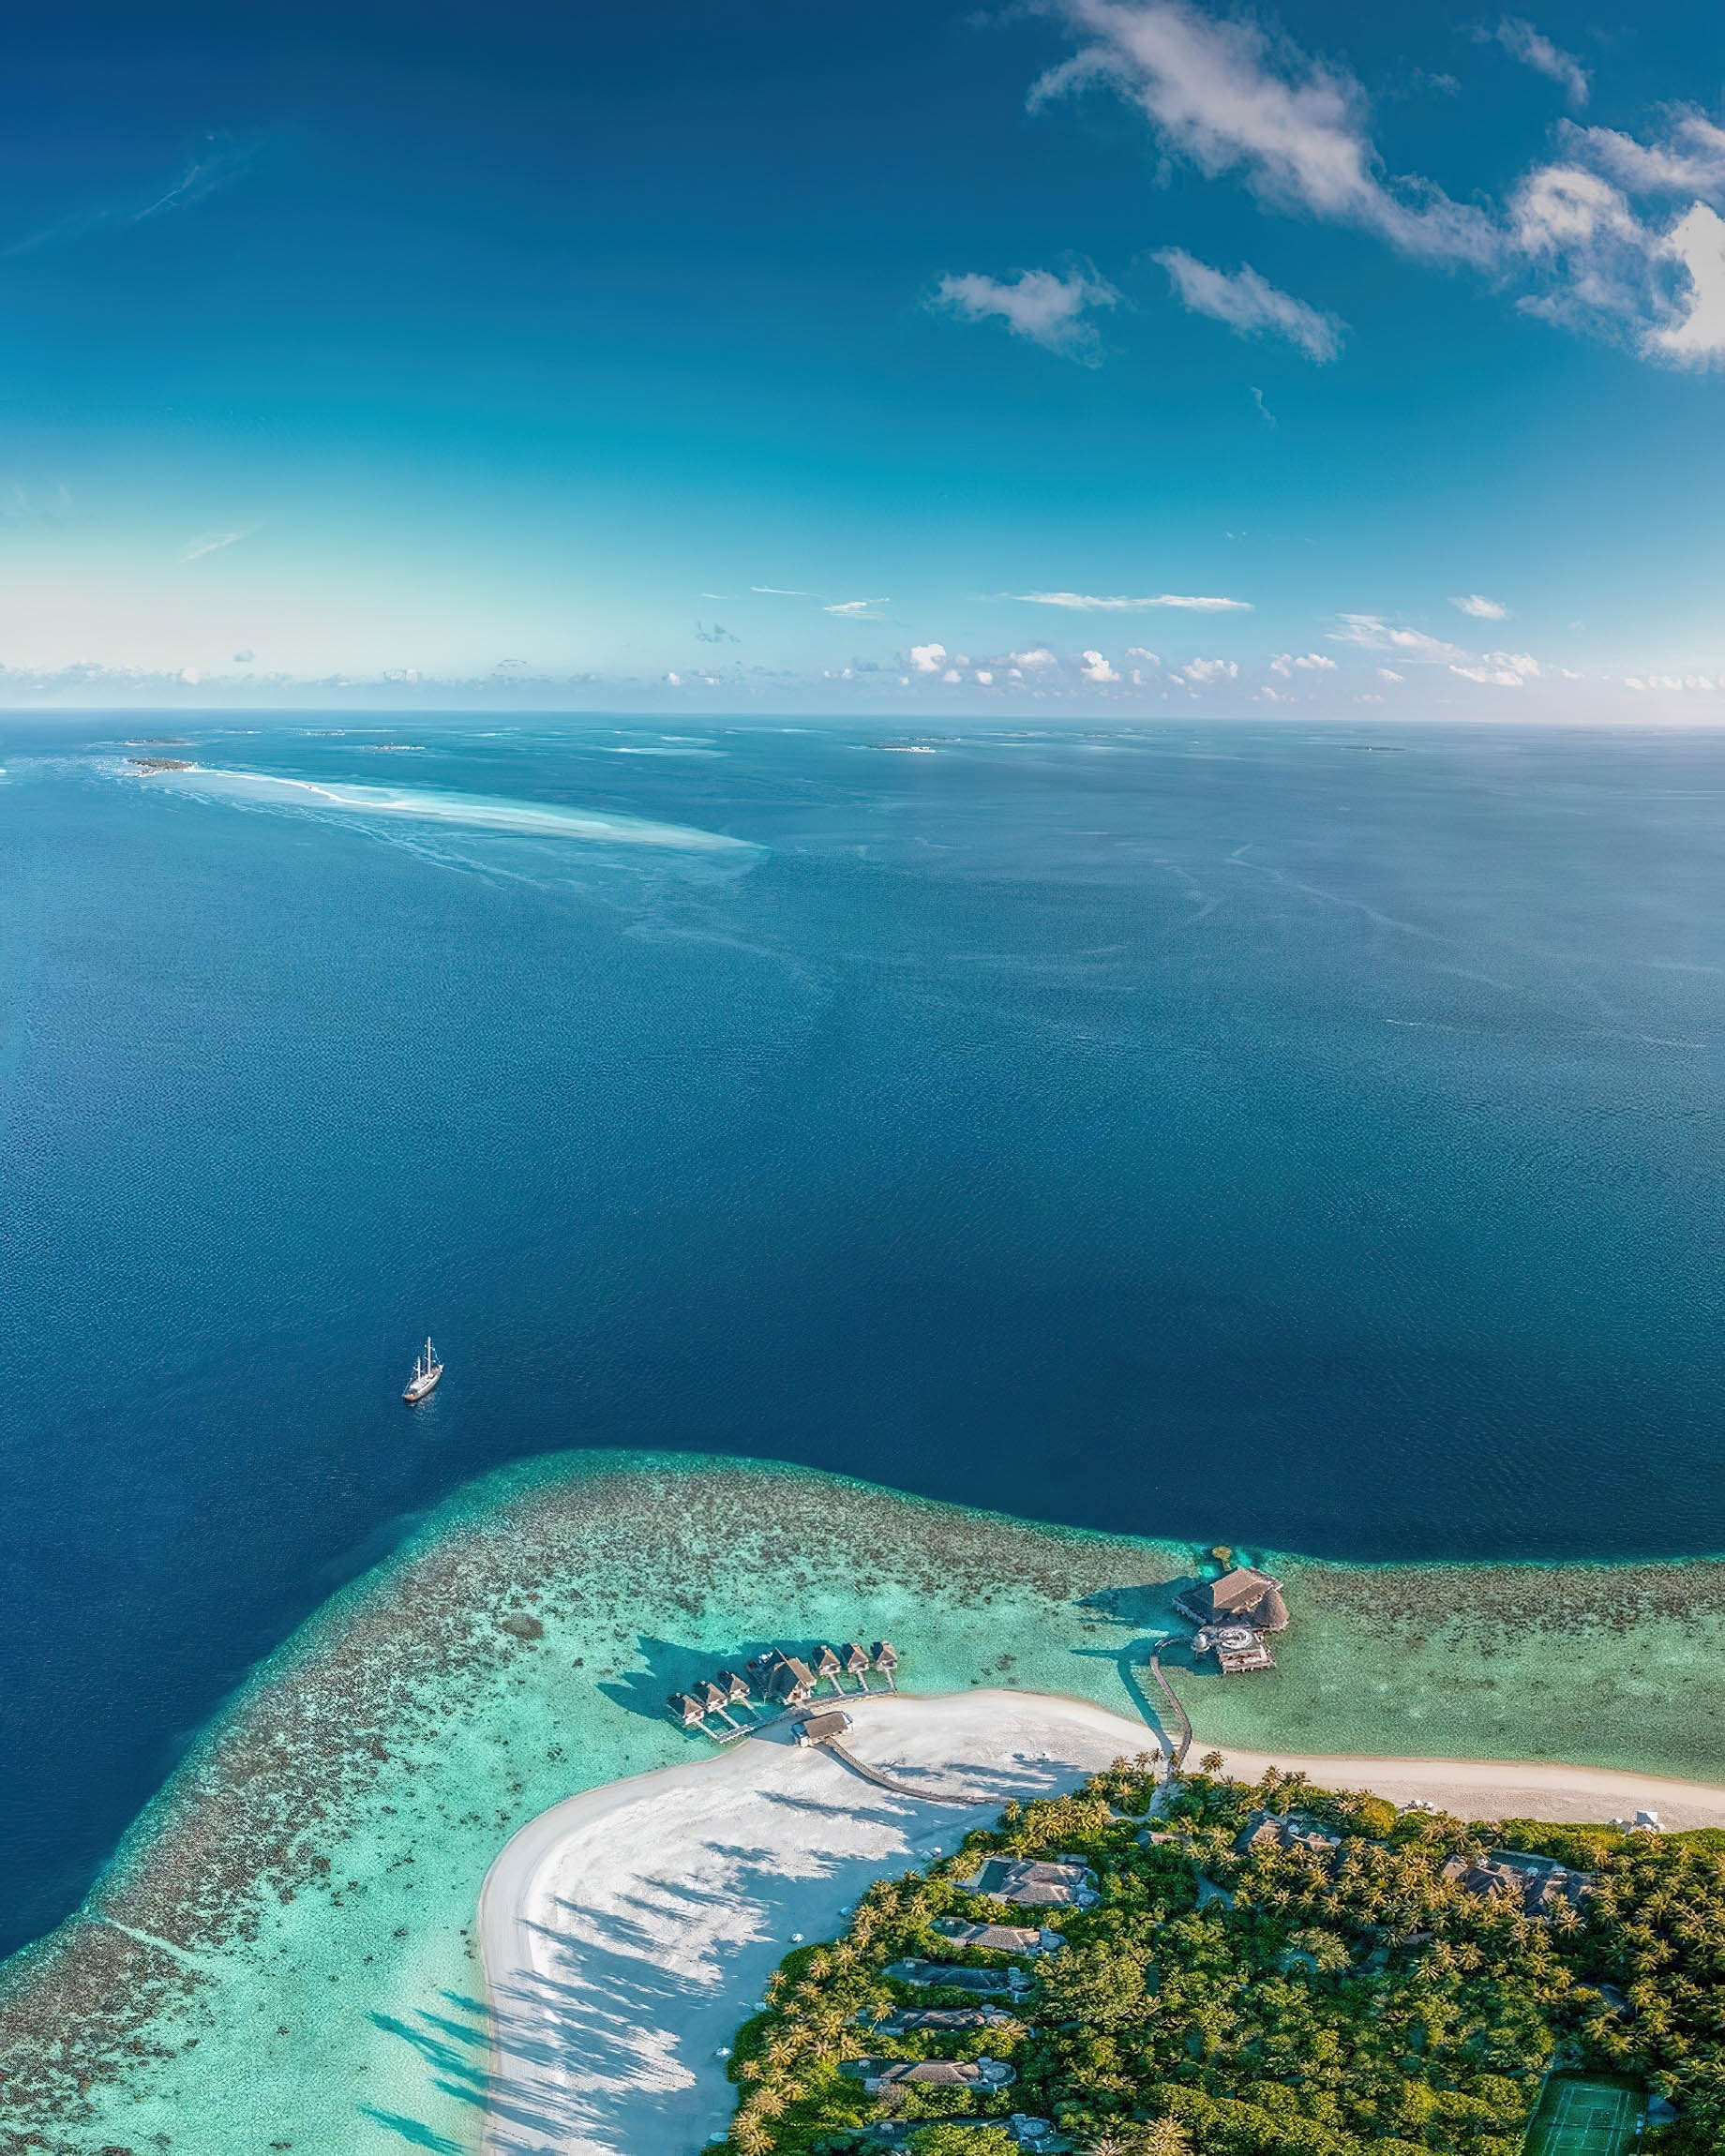 Anantara Kihavah Maldives Villas Resort - Baa Atoll, Maldives - Resort Aerial View